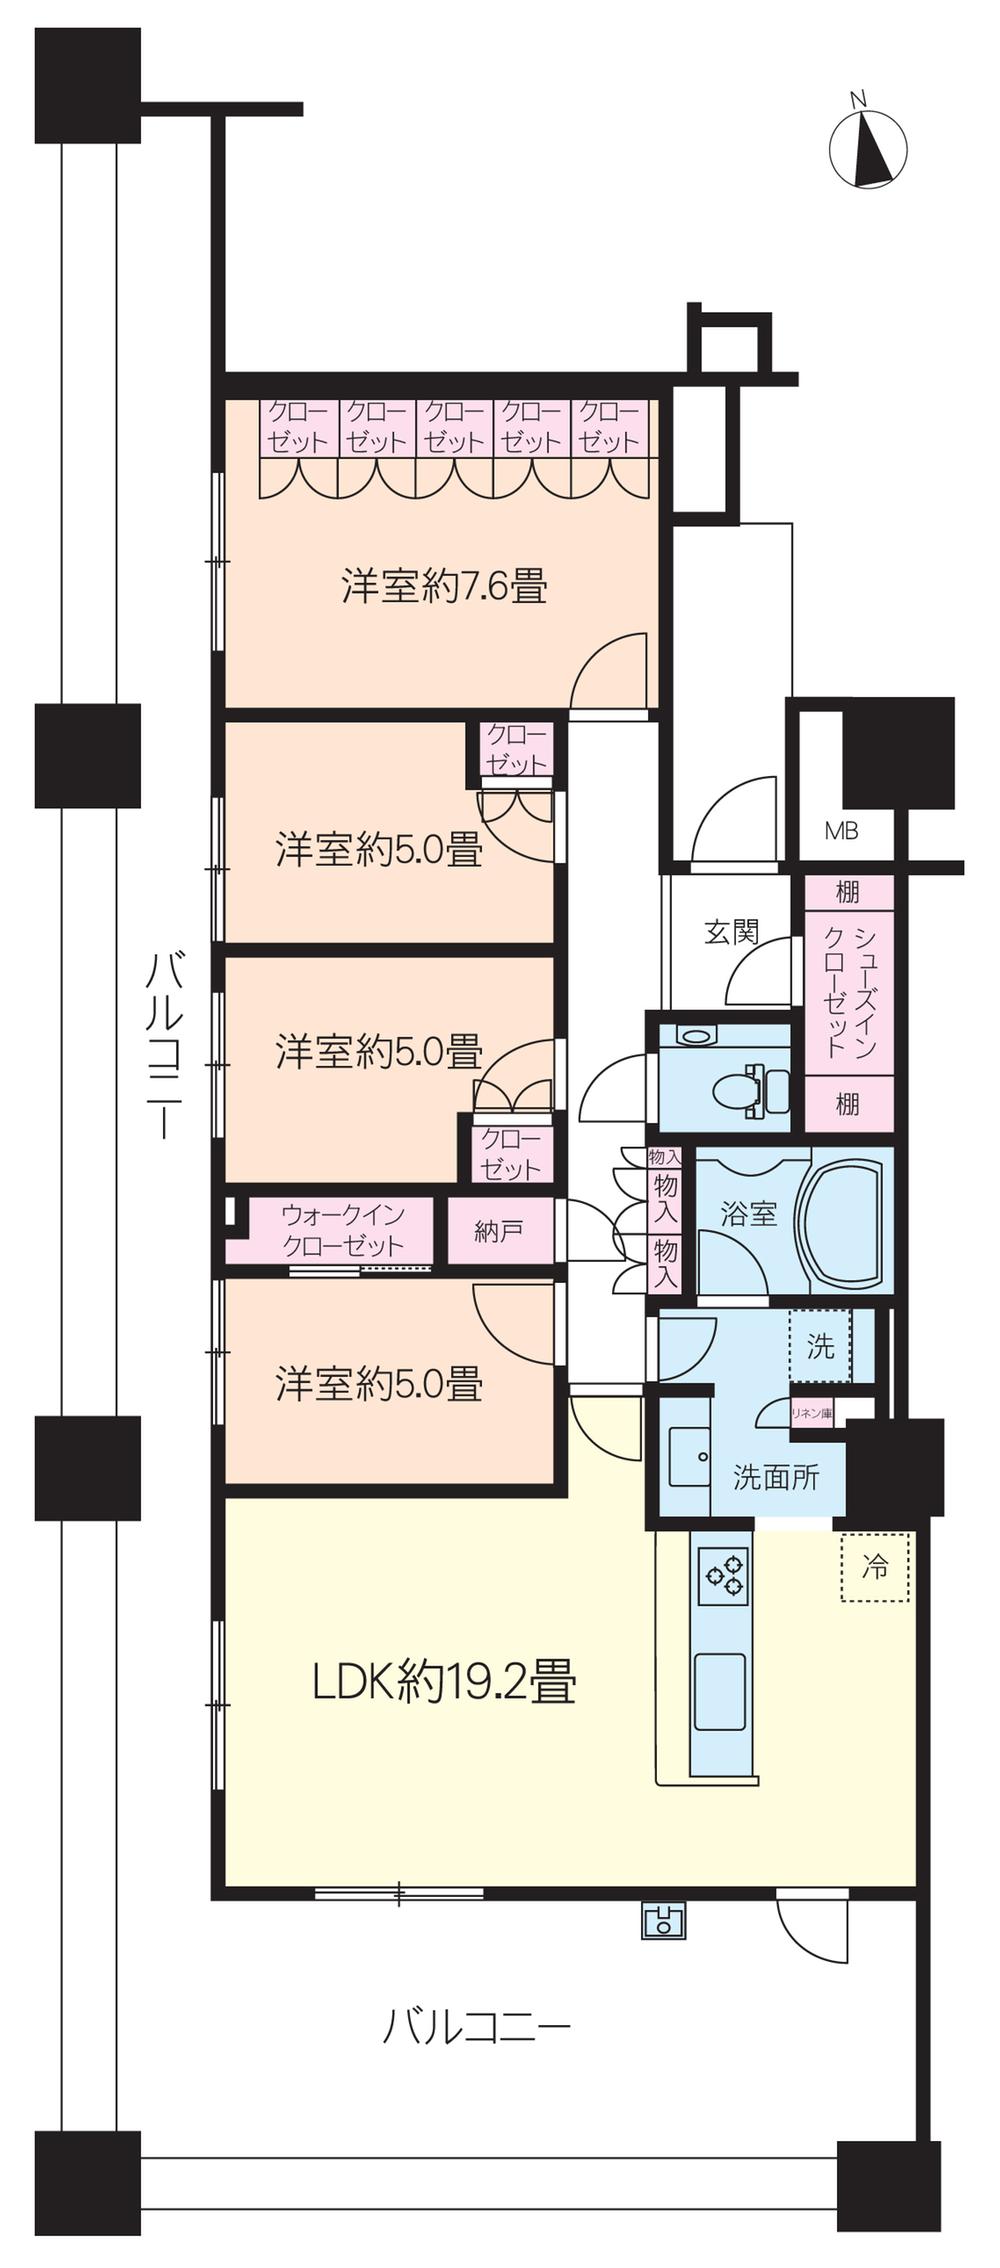 Floor plan. 4LDK + S (storeroom), Price 52,800,000 yen, Footprint 101.76 sq m , Balcony area 50.47 sq m